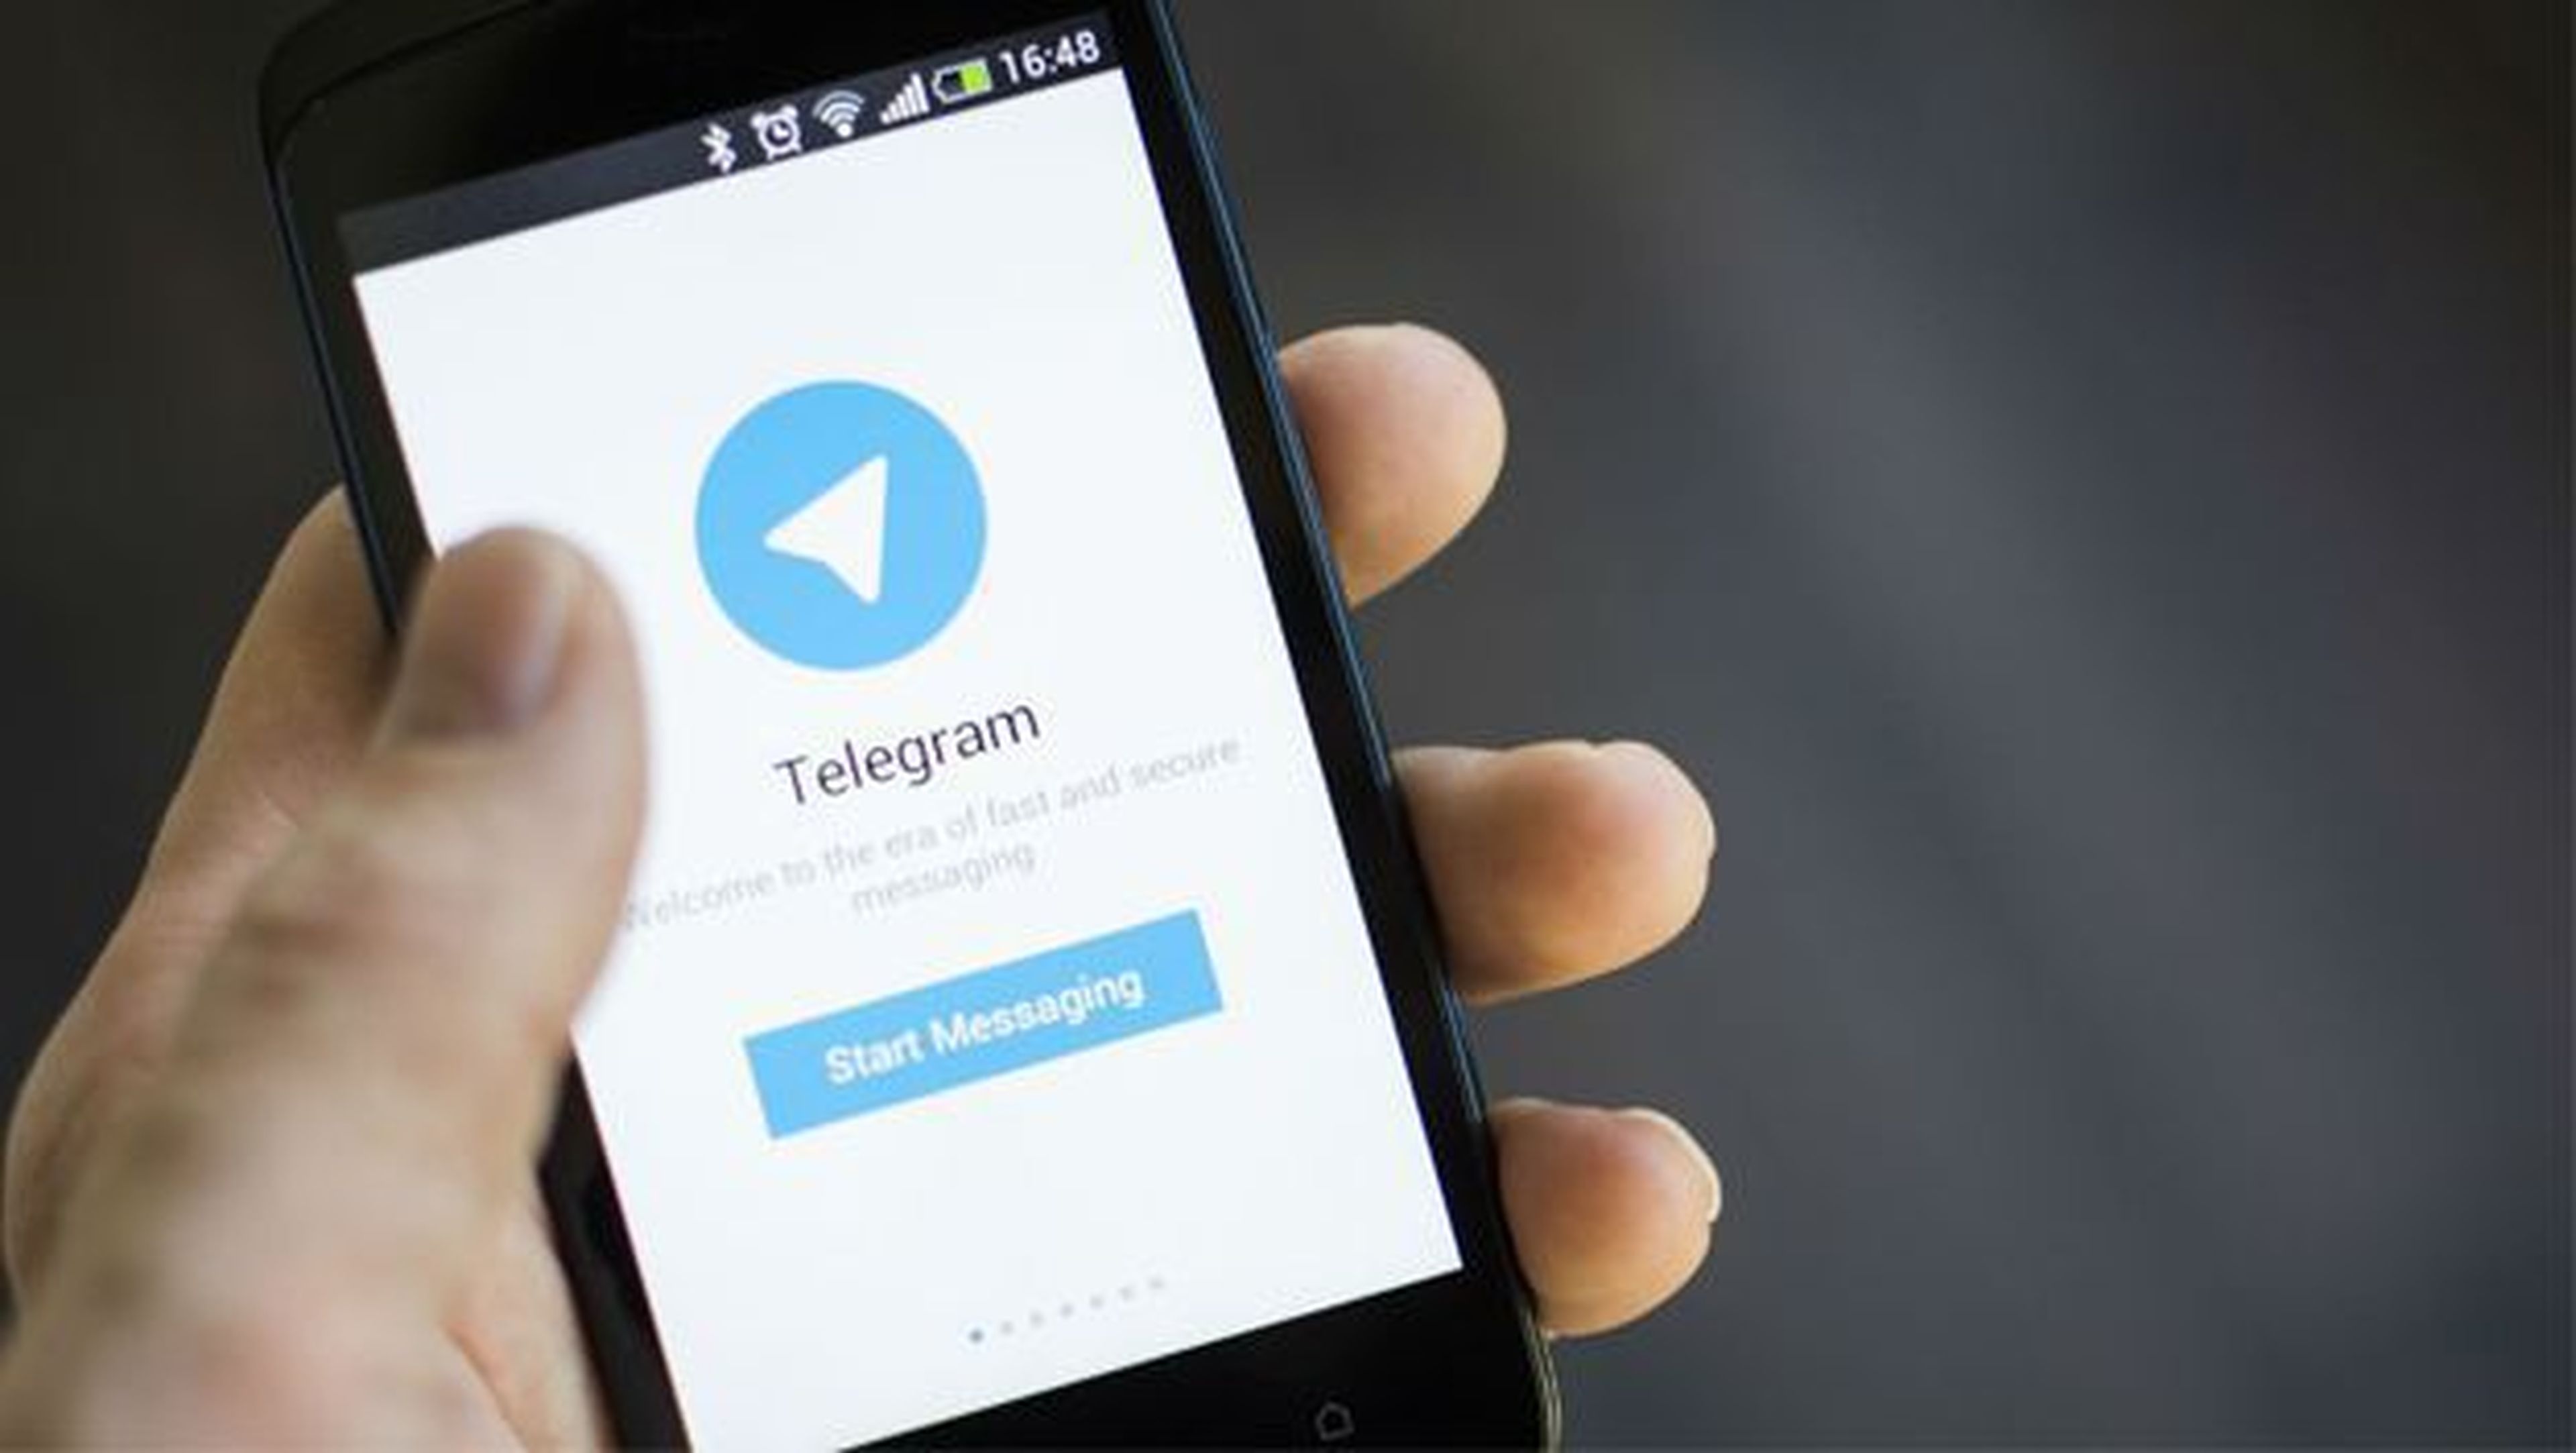 Ya sabemos por qué Apple eliminó Telegram para iPhone.